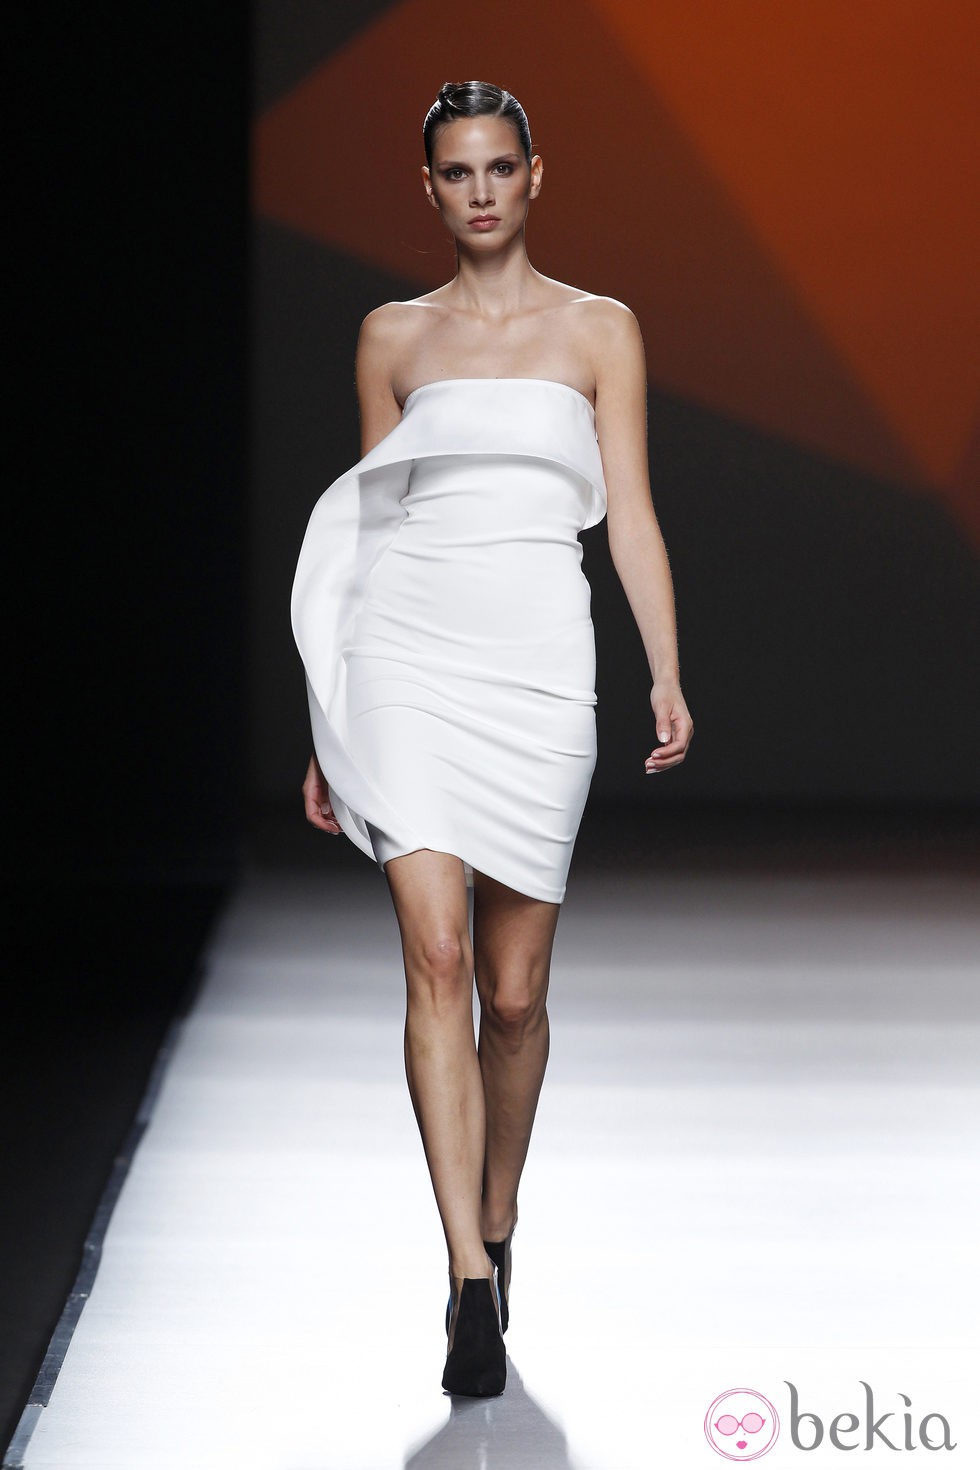 Vestido blanco con volante de la colección primavera/verano 2014 de AA de Amaya Arzuaga en Madrid Fahion Week